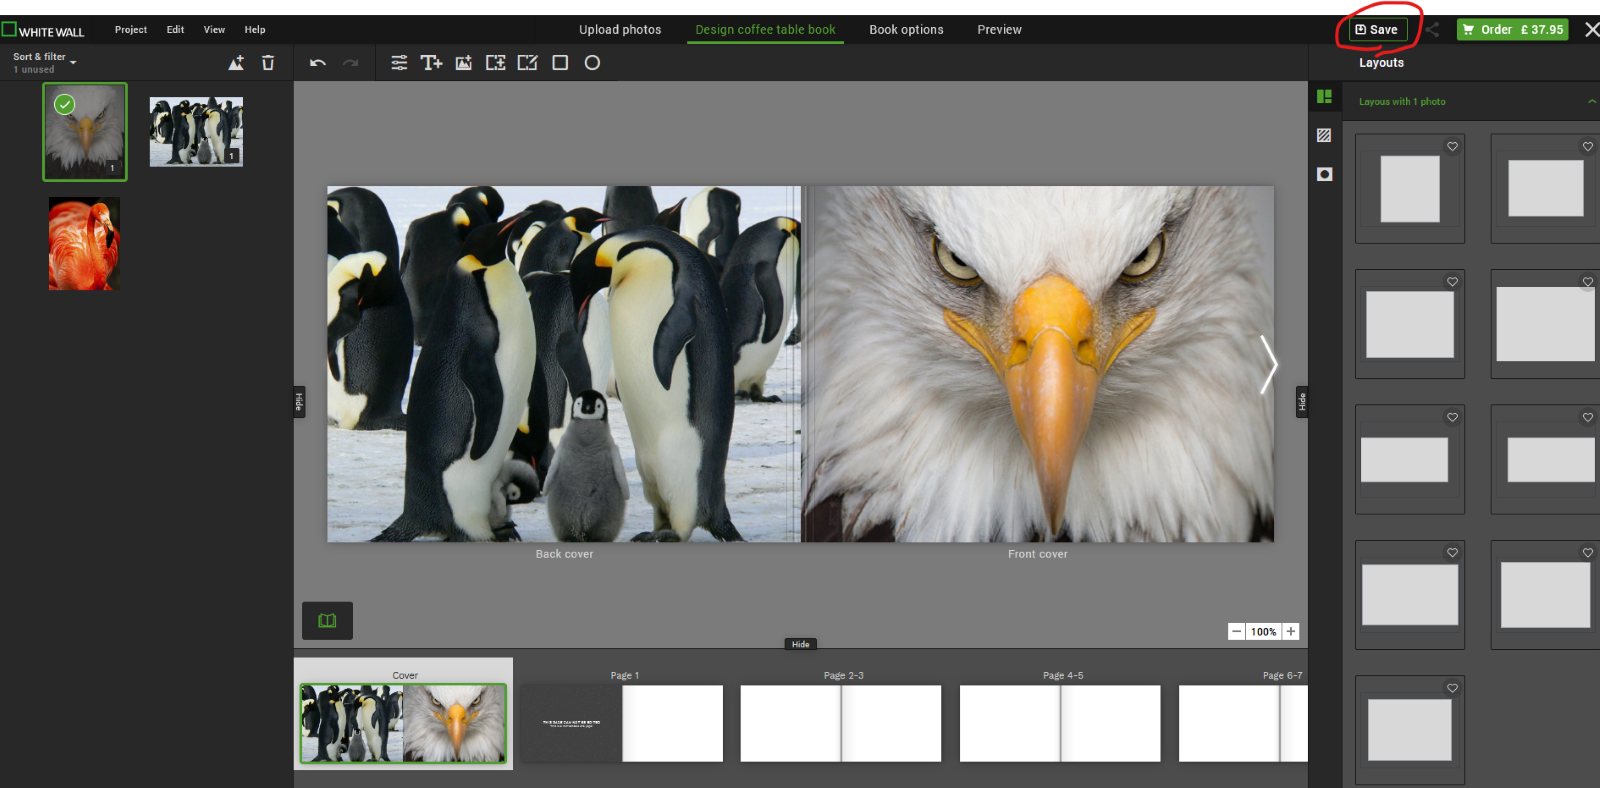 Ein Bild, das Multimedia-Software, Pinguin, Screenshot, Text enthält.

Automatisch generierte Beschreibung